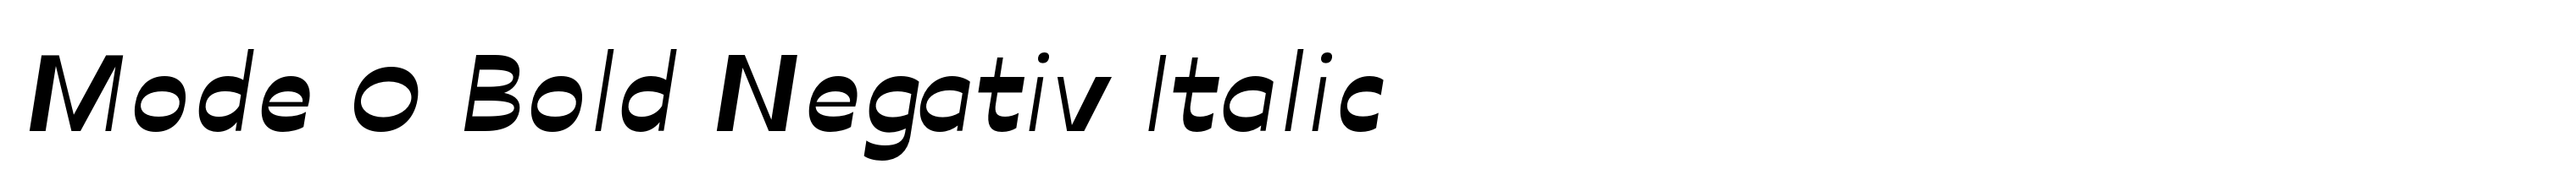 Mode 0 Bold Negativ Italic